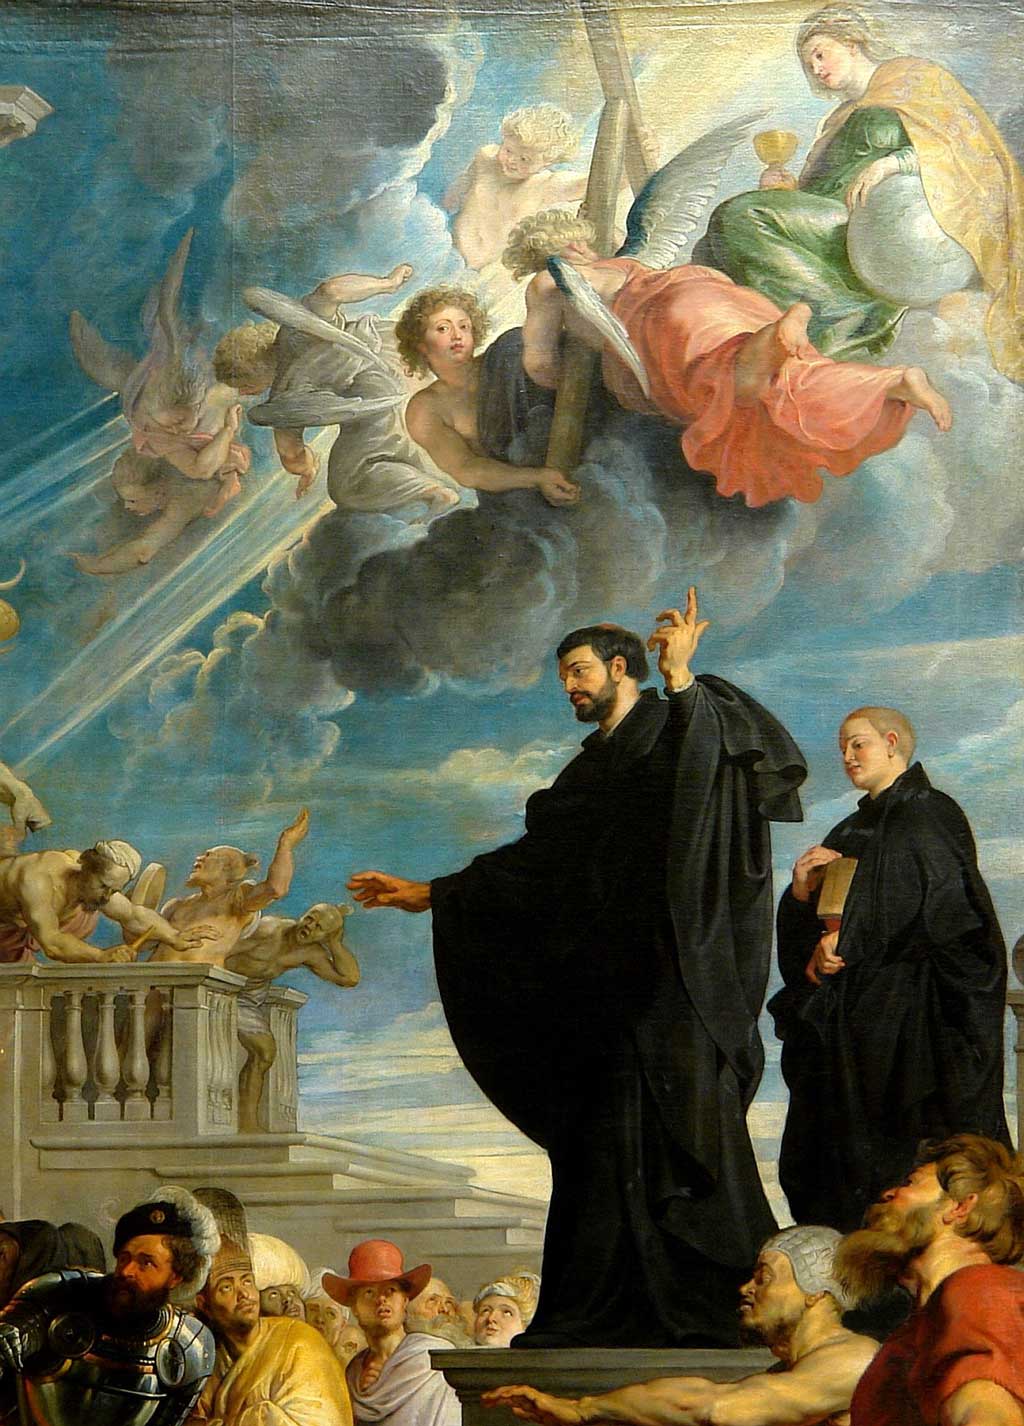 St Francis Xavier. Jesus Christ Wallpaper. Christian Songs Online